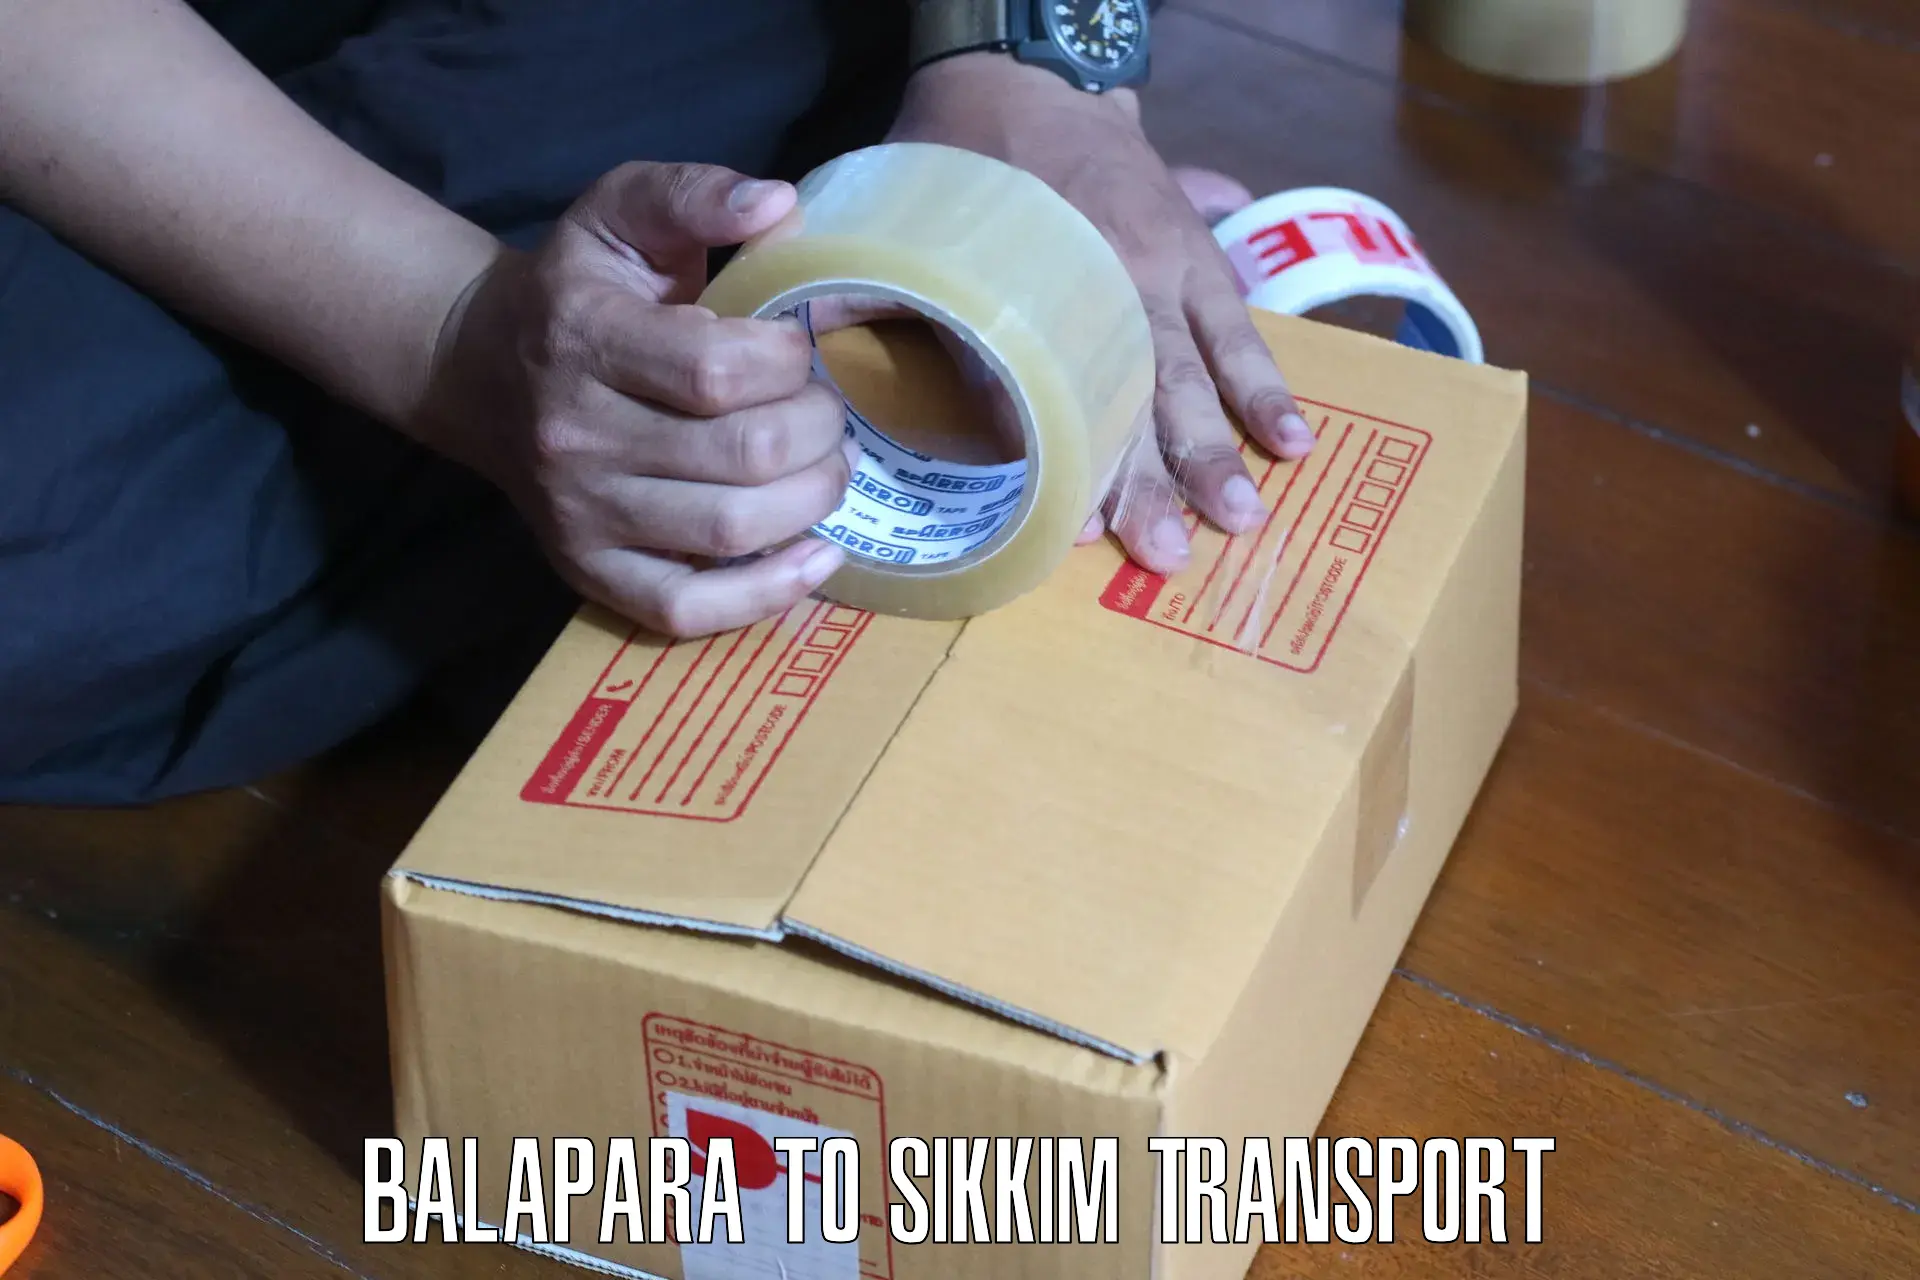 Bike transport service Balapara to Pelling